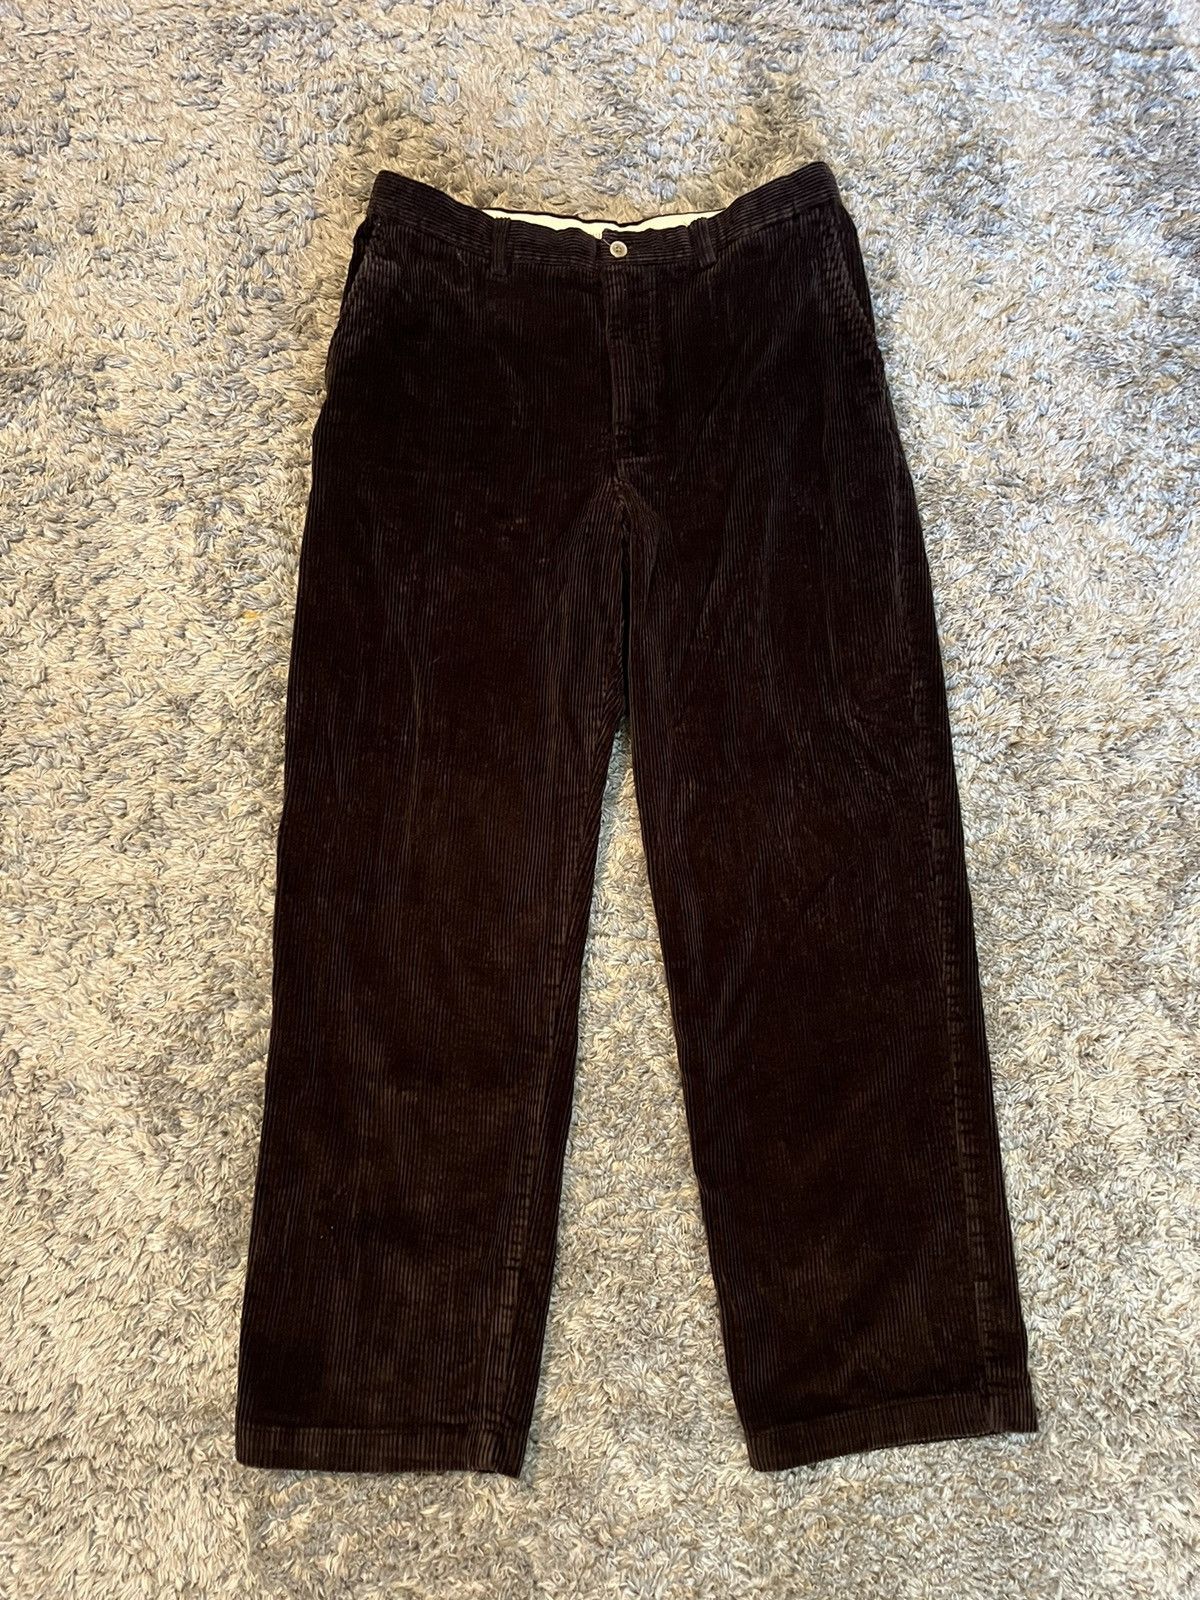 Savane Vintage Brown Corduroy Pants | Grailed